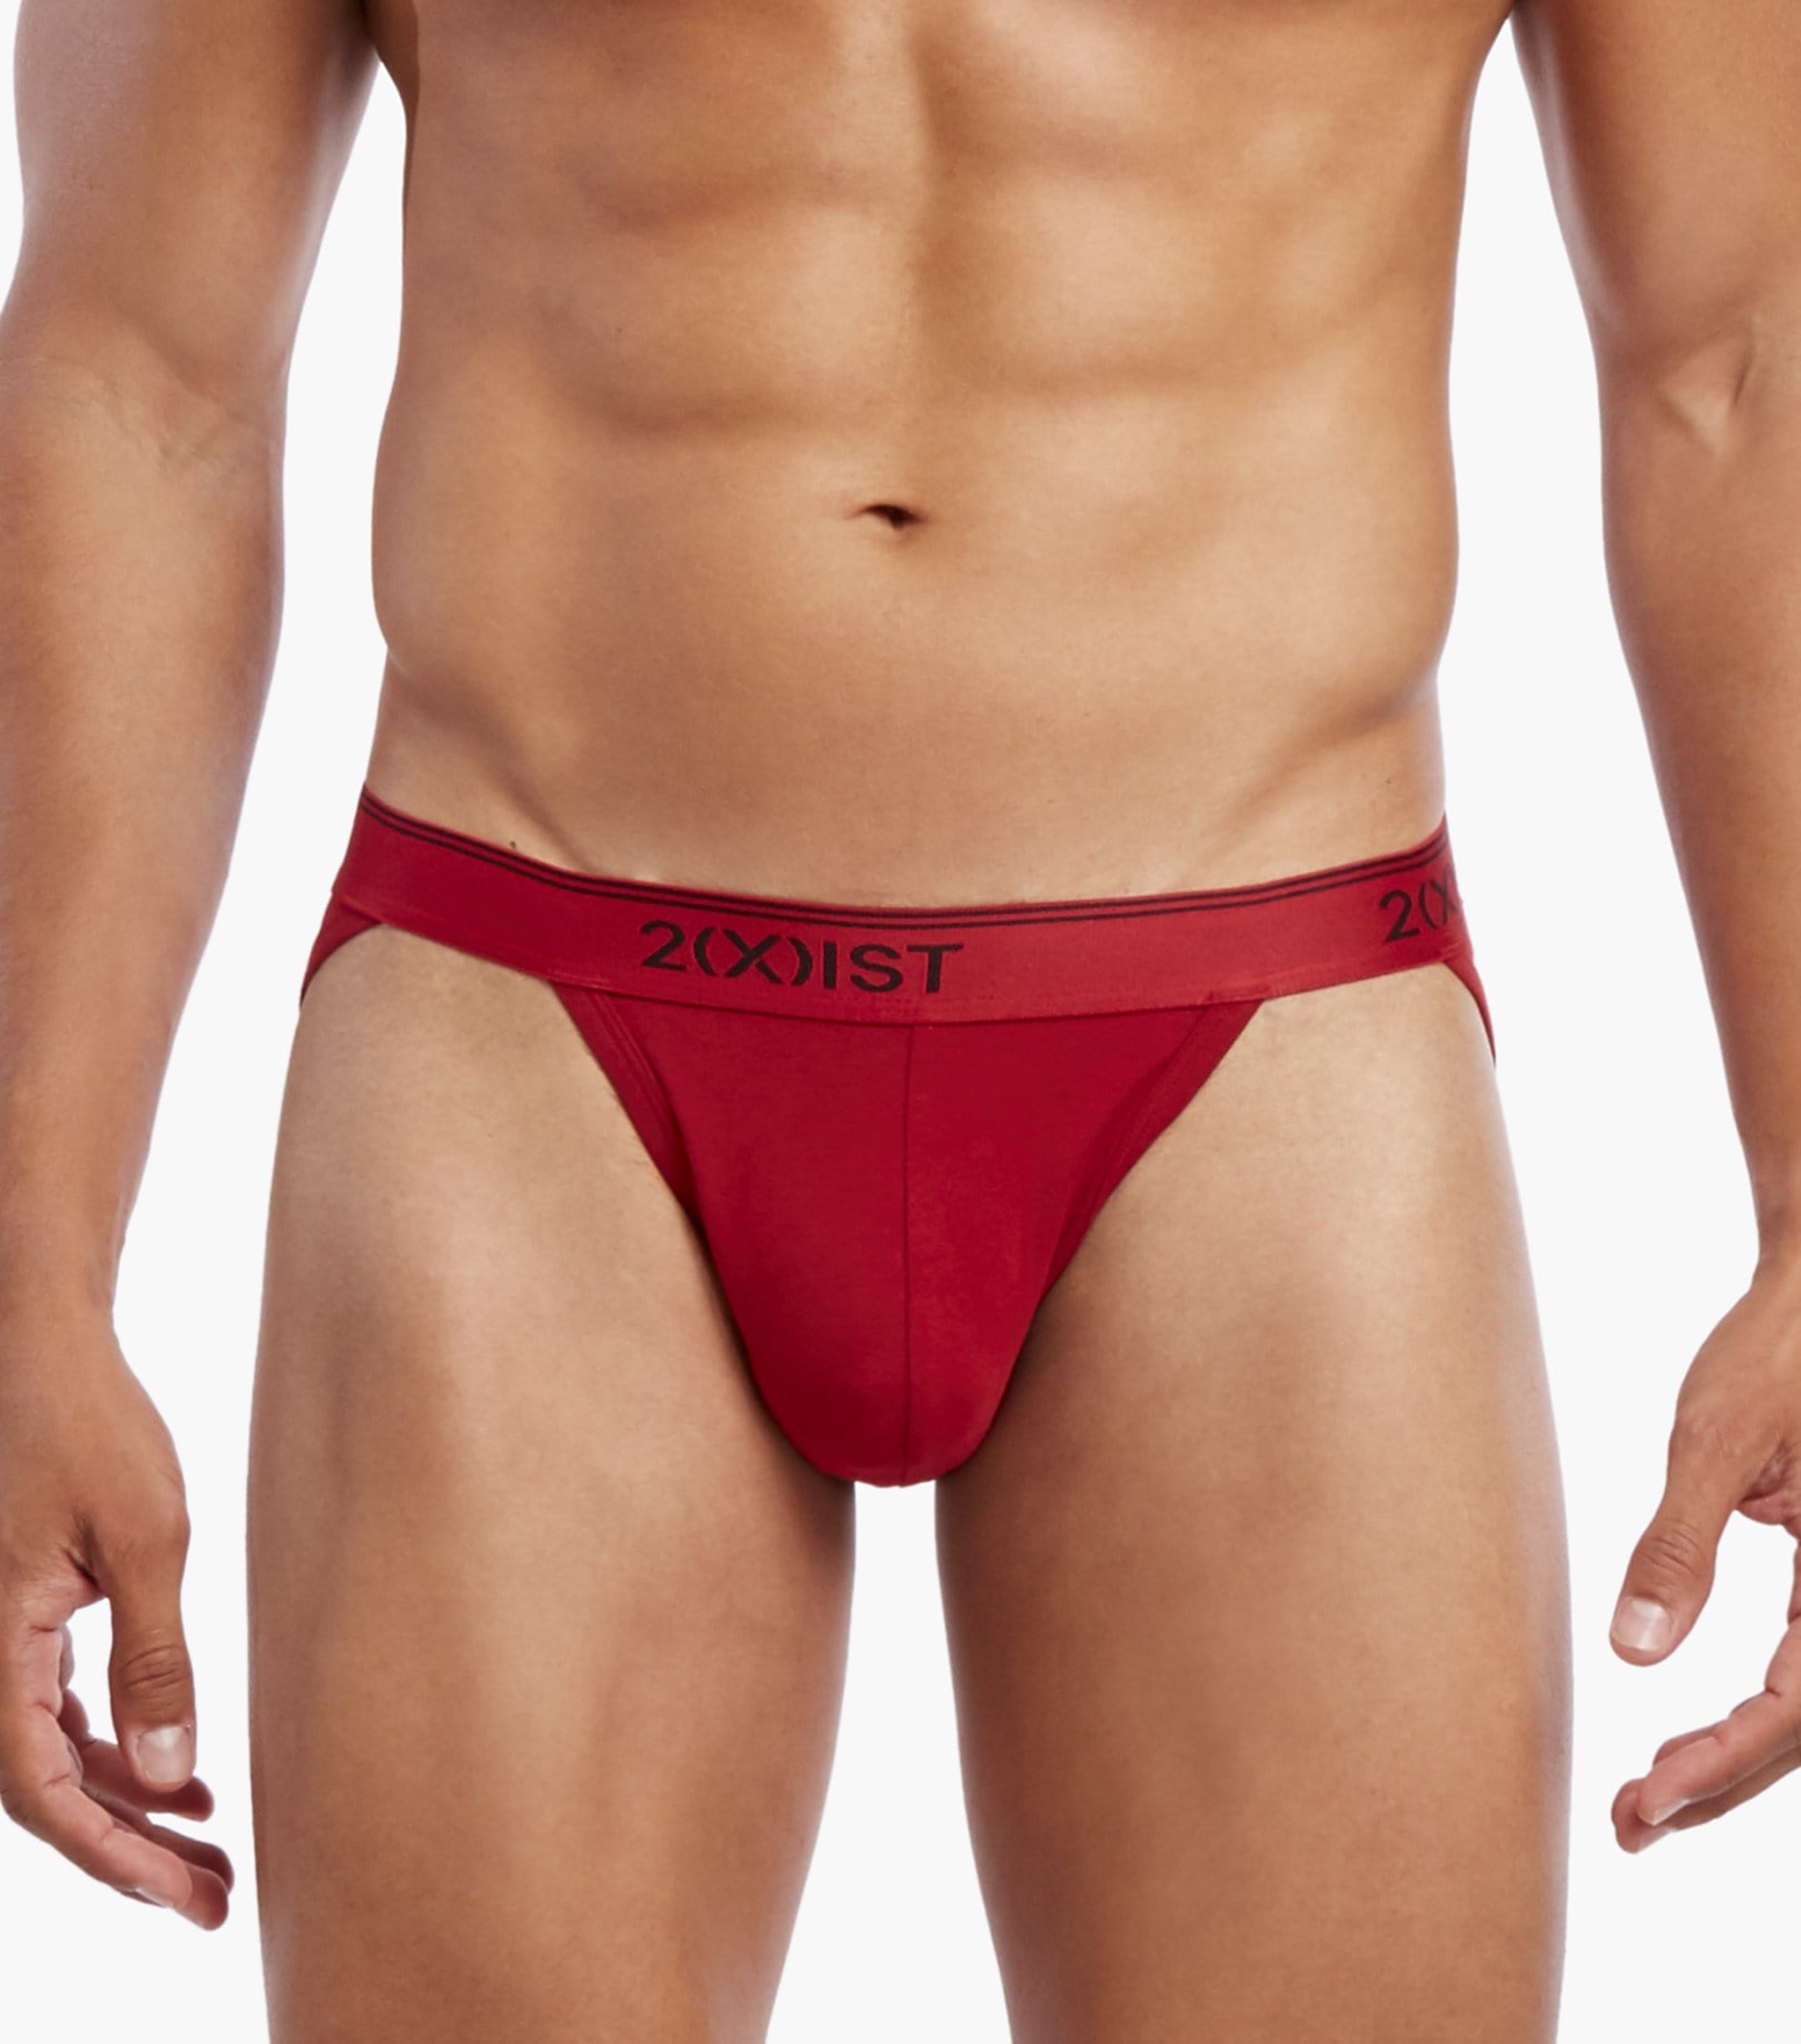 2(X)IST mens 3103462003s briefs underwear, Black, Small US at  Men's  Clothing store: Briefs Underwear